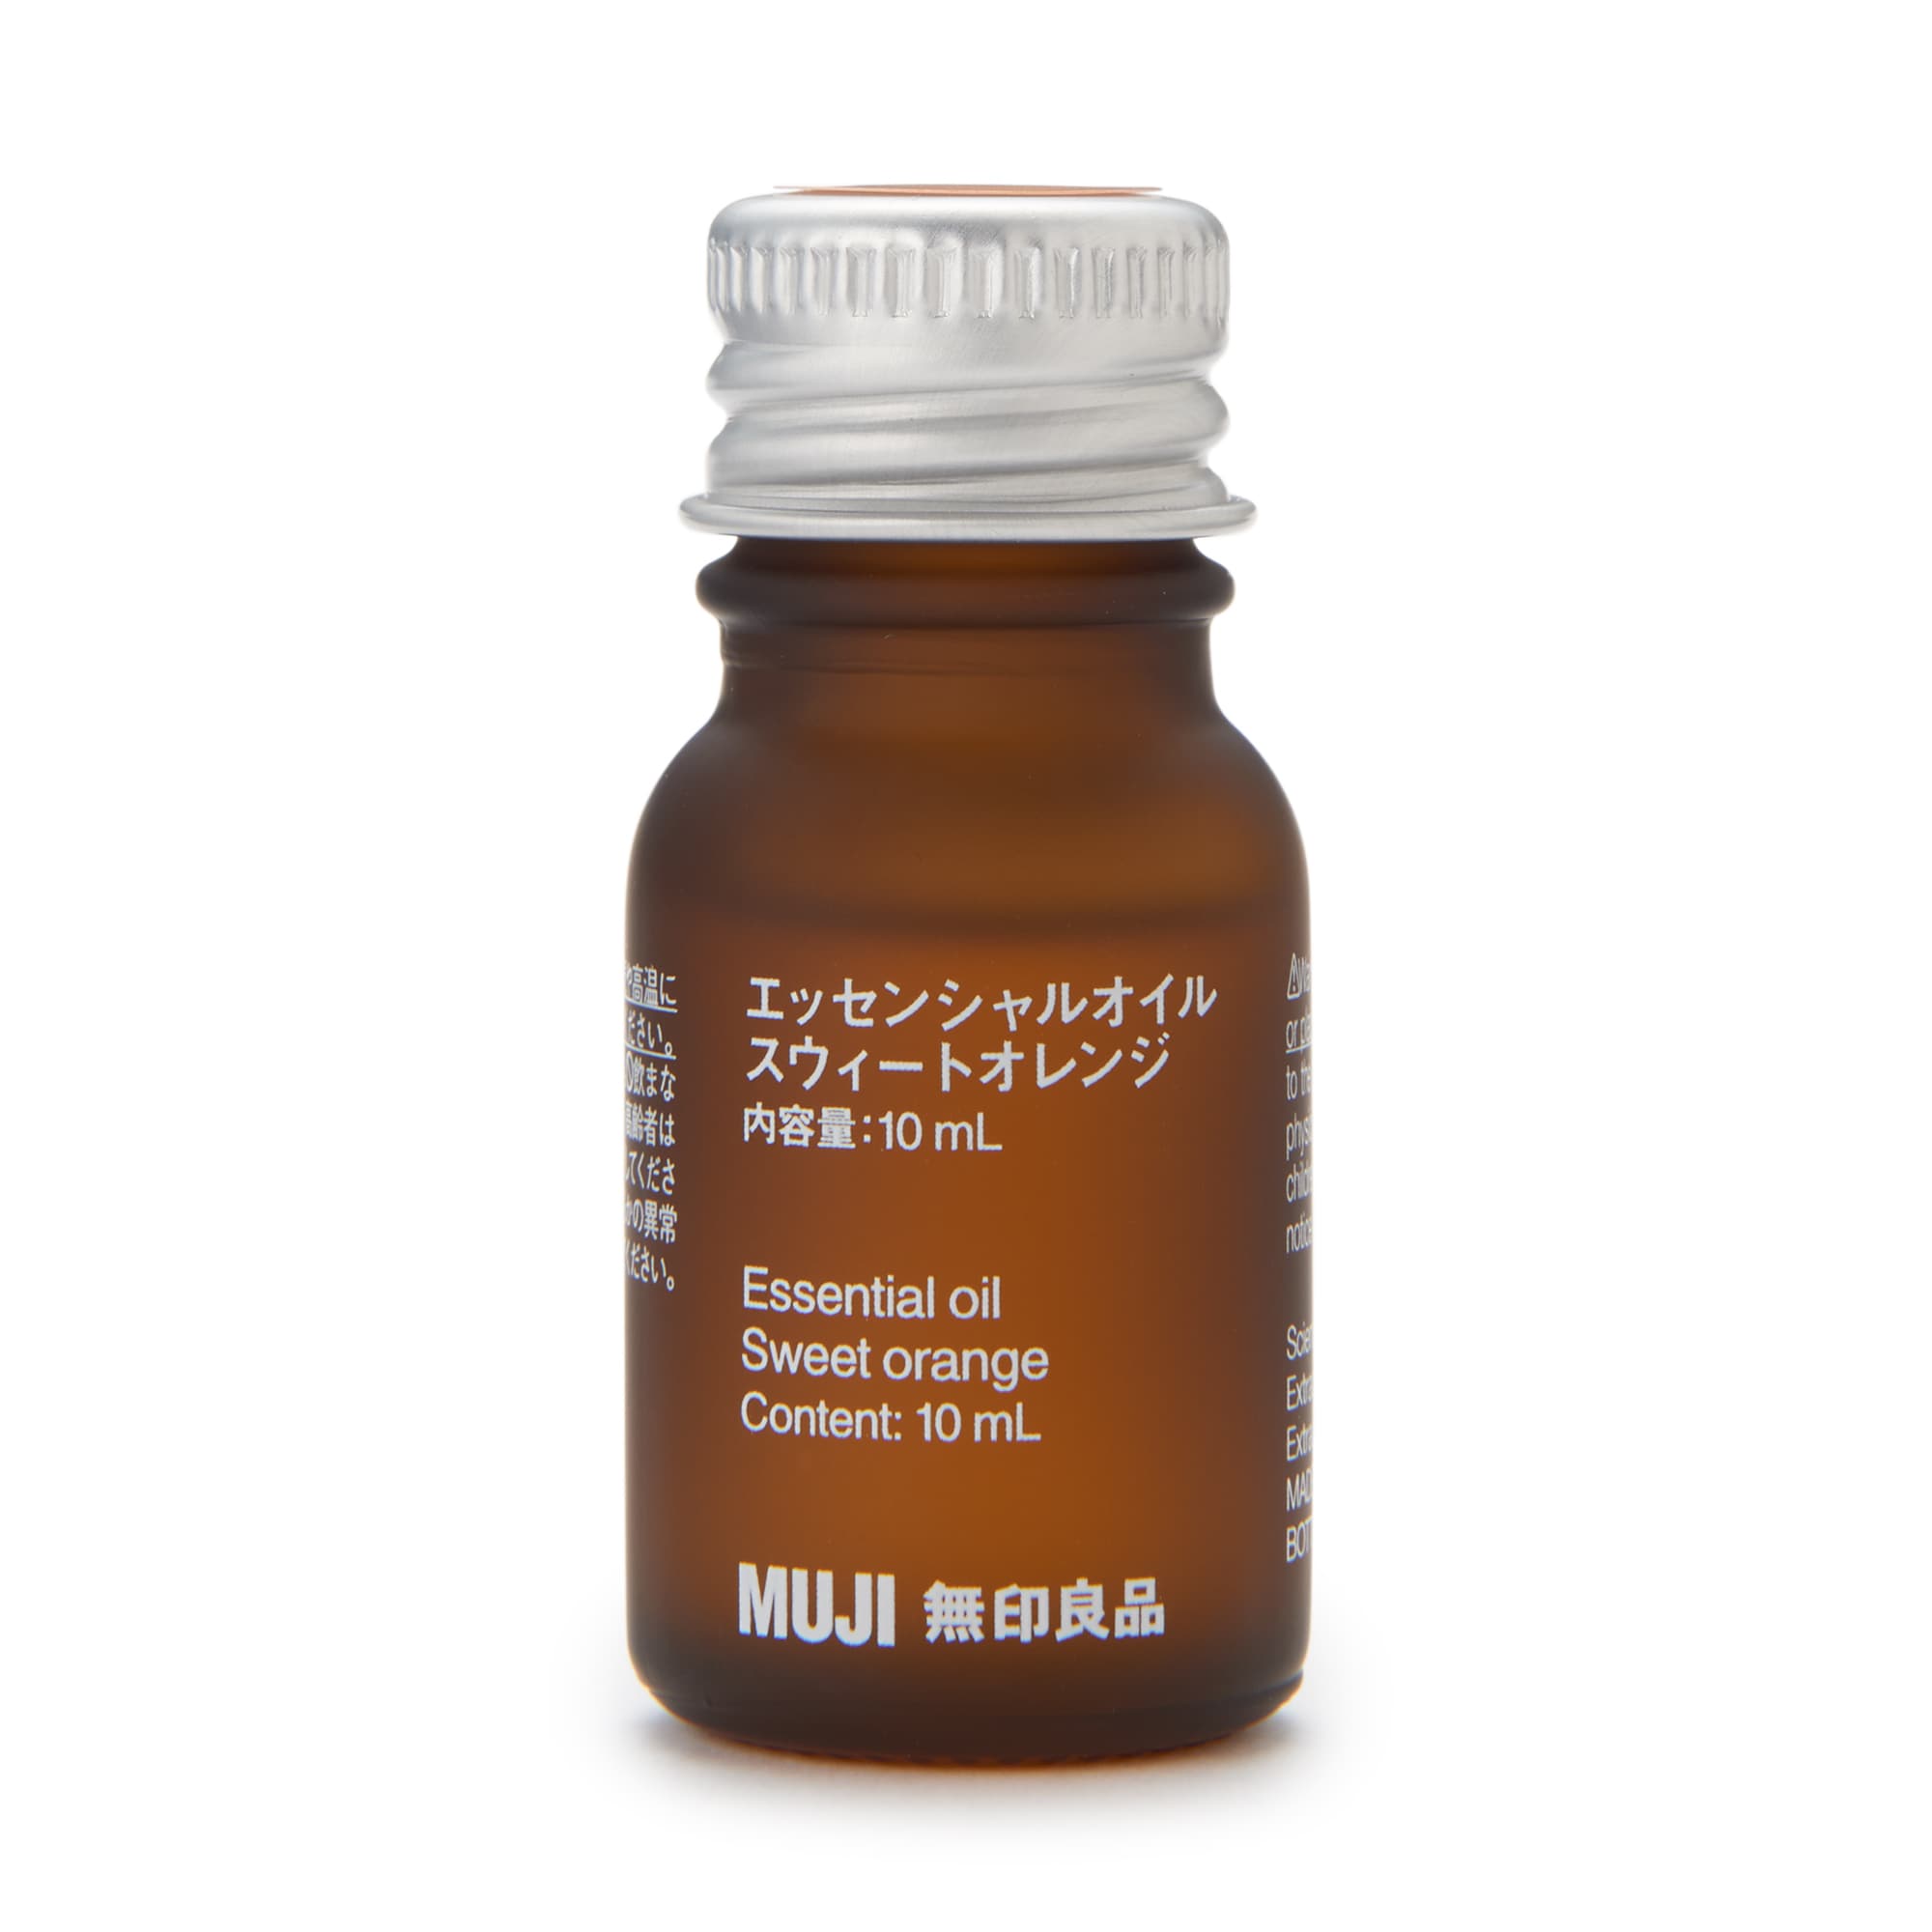 무인양품 일본 천연 아로마 향수 오일 에센셜 오일 10ml 스위트 오렌지 